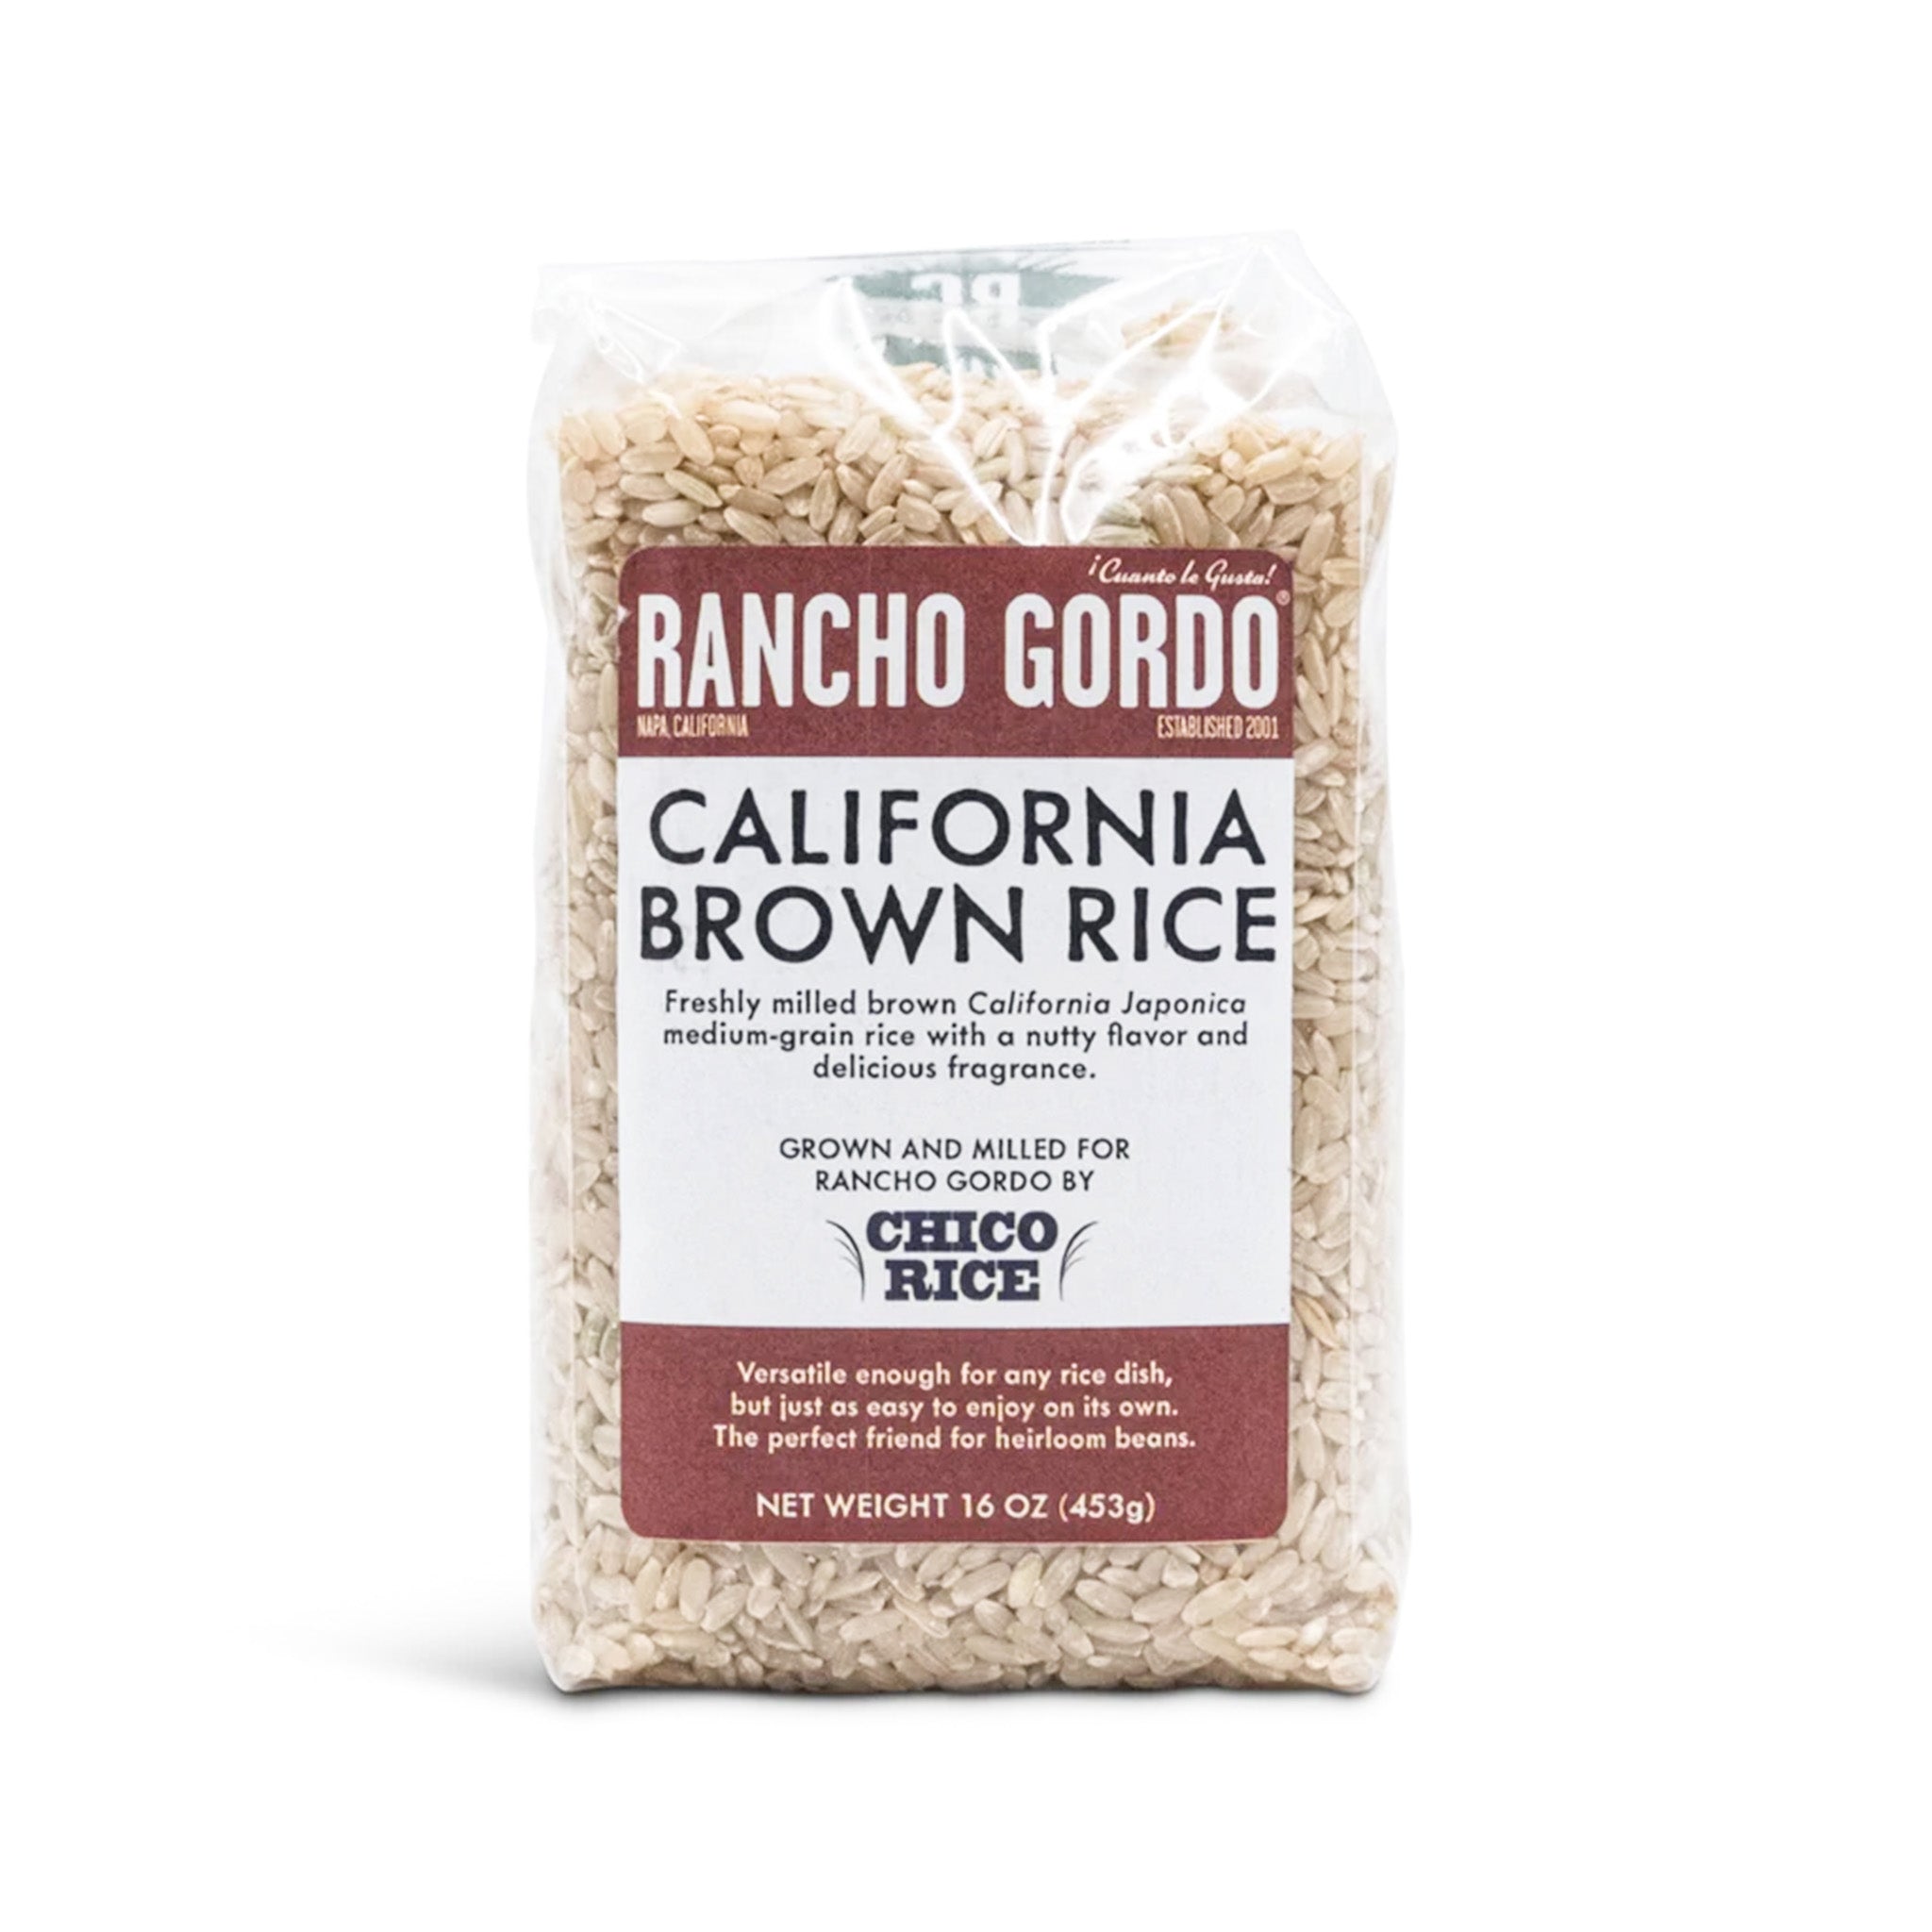 Rancho Gordo California Brown Rice